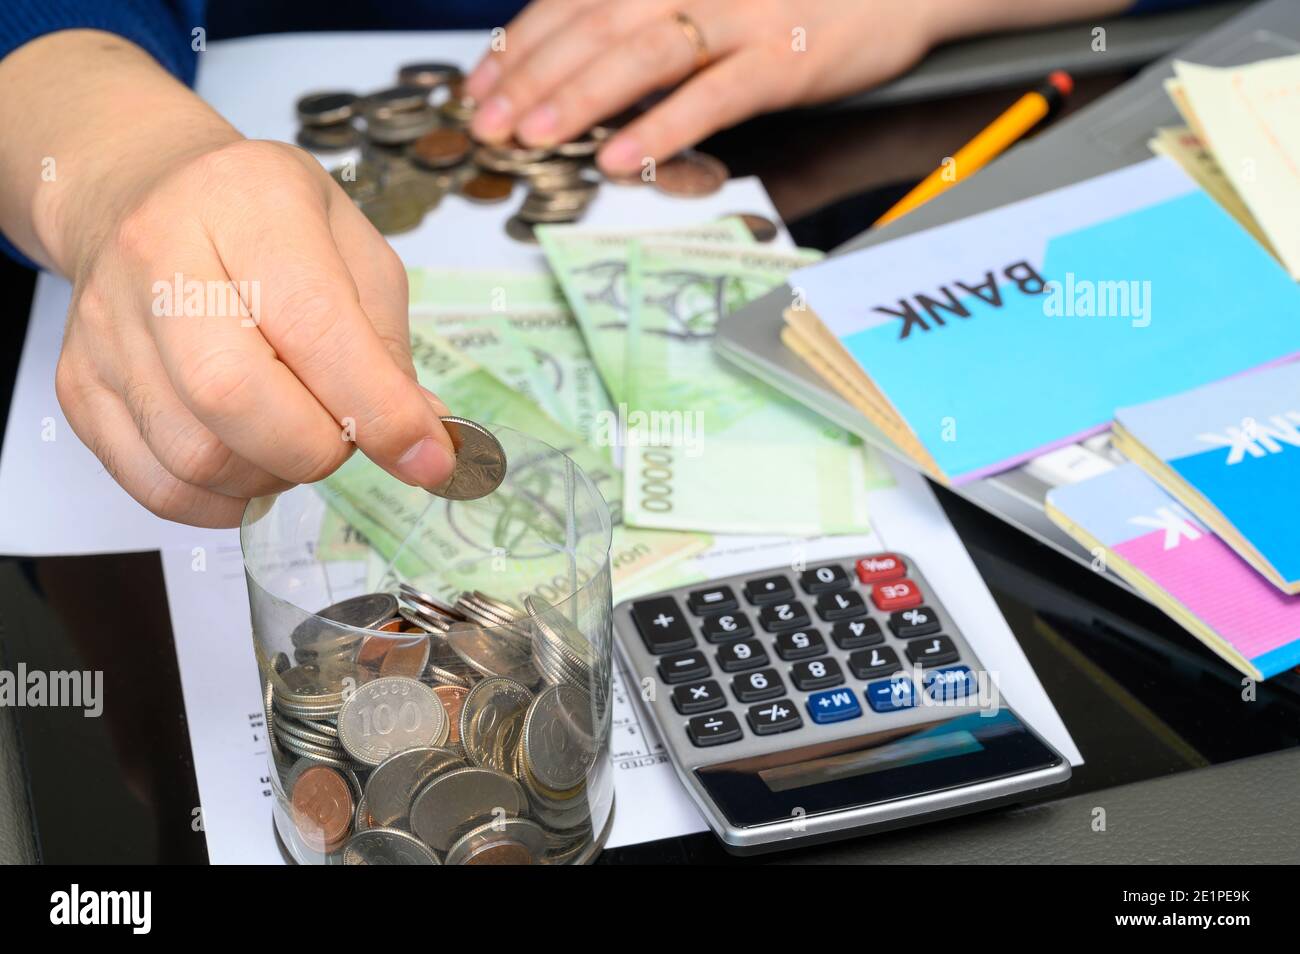 Die Hände der Männer, die ein Bankpassbuch halten und ein Budget weben. Stockfoto